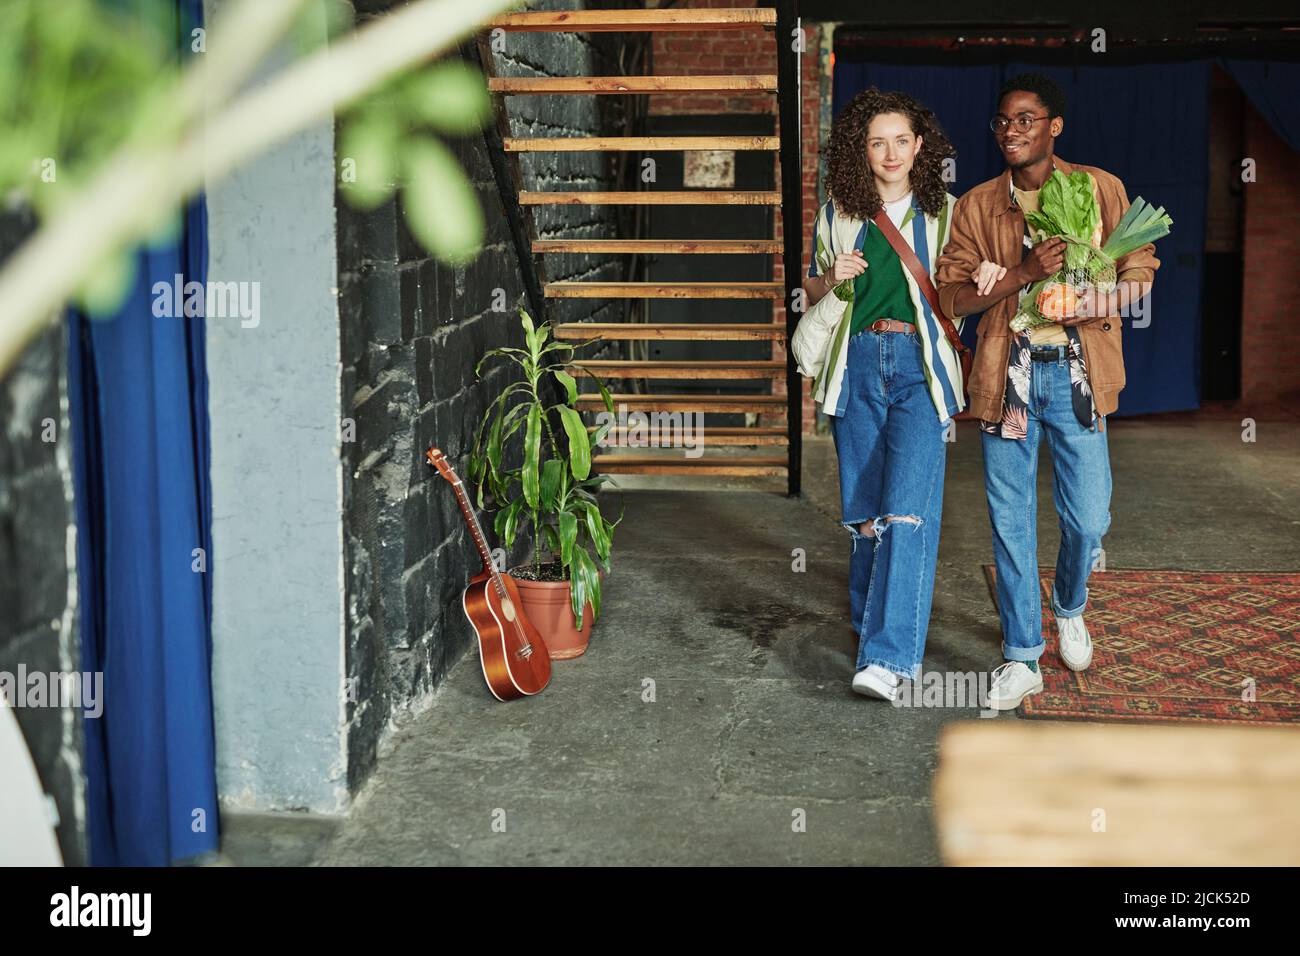 Glückliches junges interkulturelles Paar in stilvoller Casualwear, das sich im Wohnzimmer der Loft-Wohnung bewegt, während es vom Supermarkt zurückkommt Stockfoto